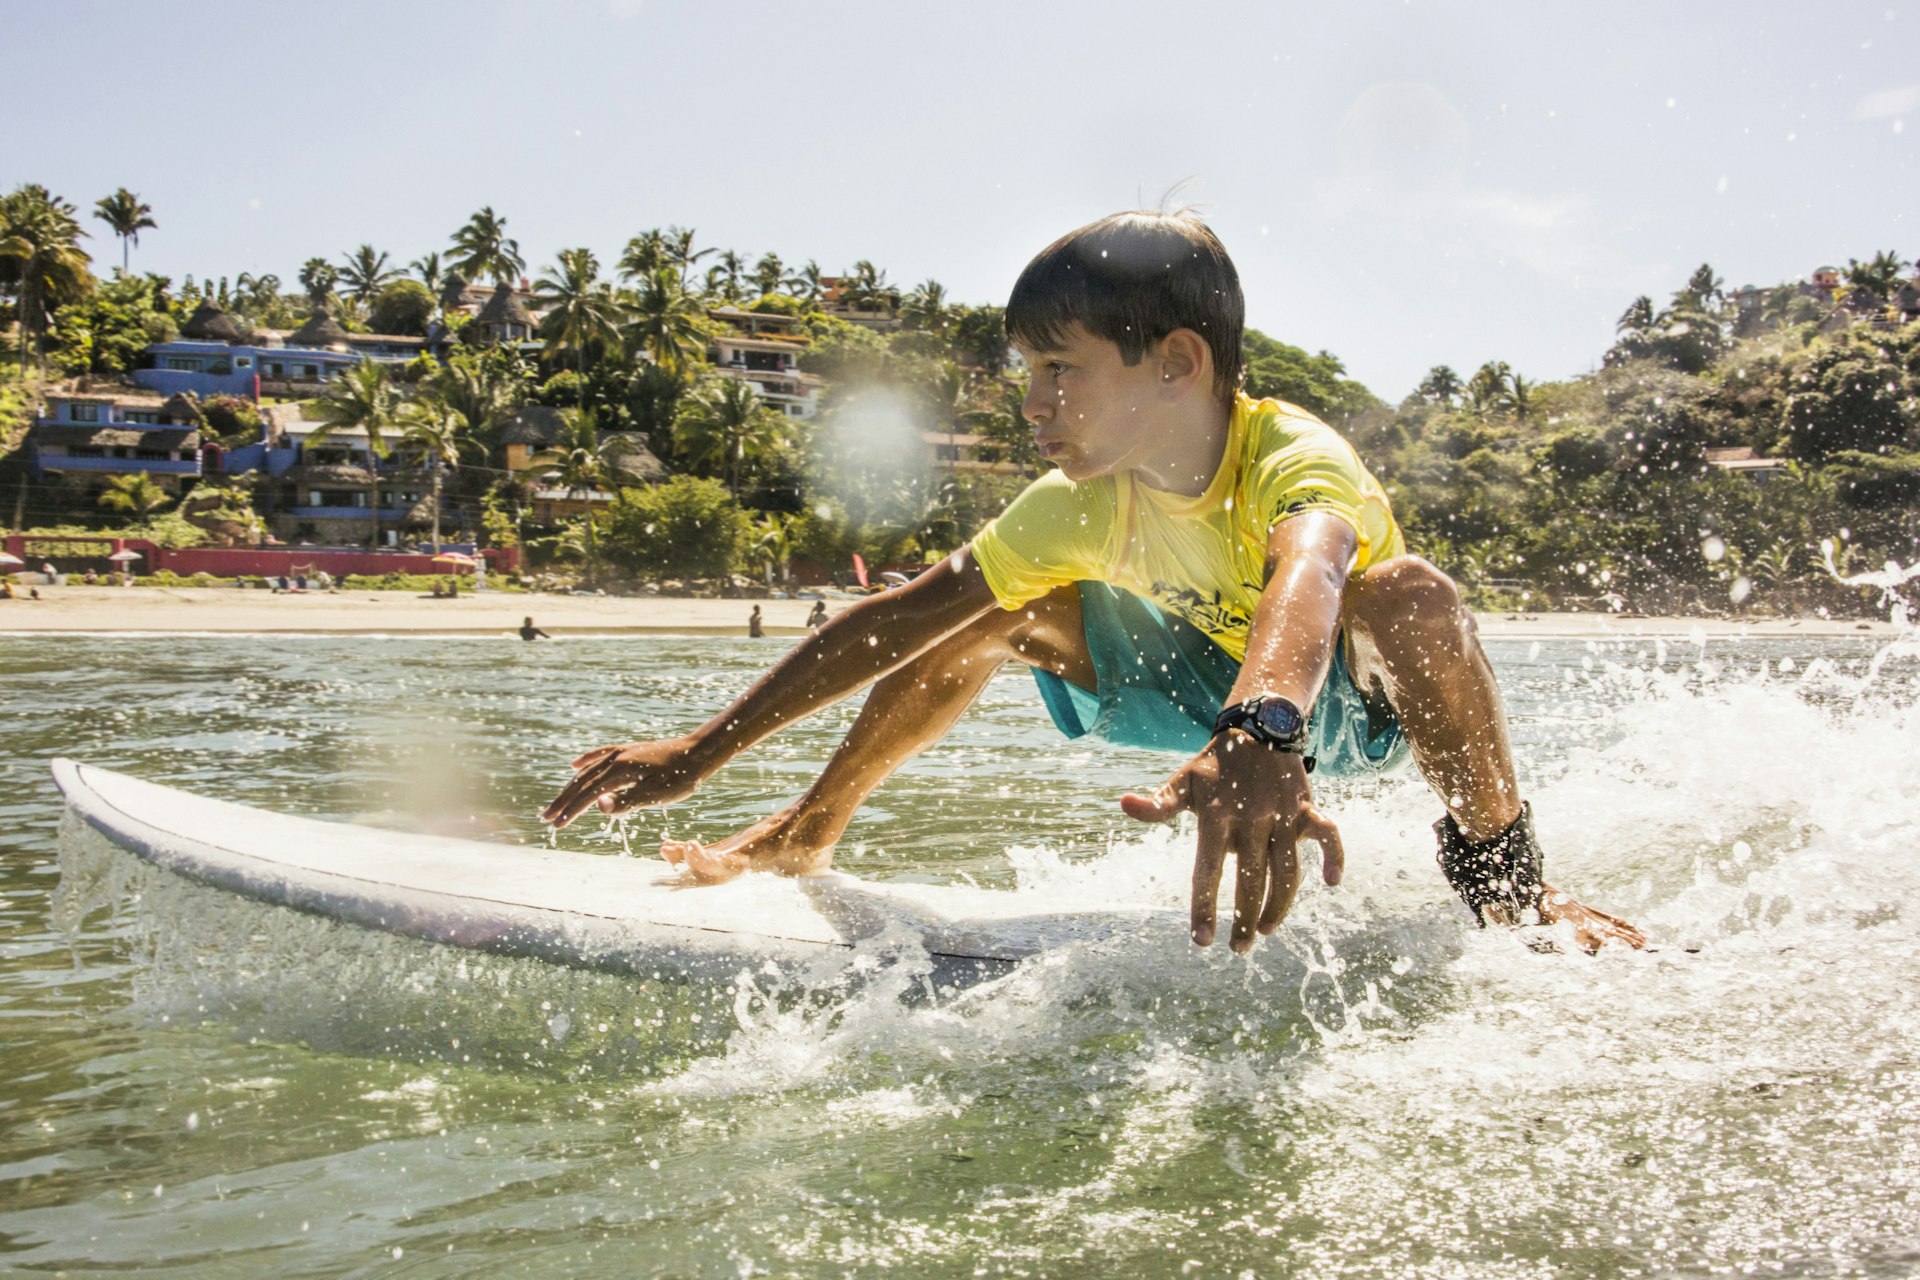 Mixed race boy surfing in ocean